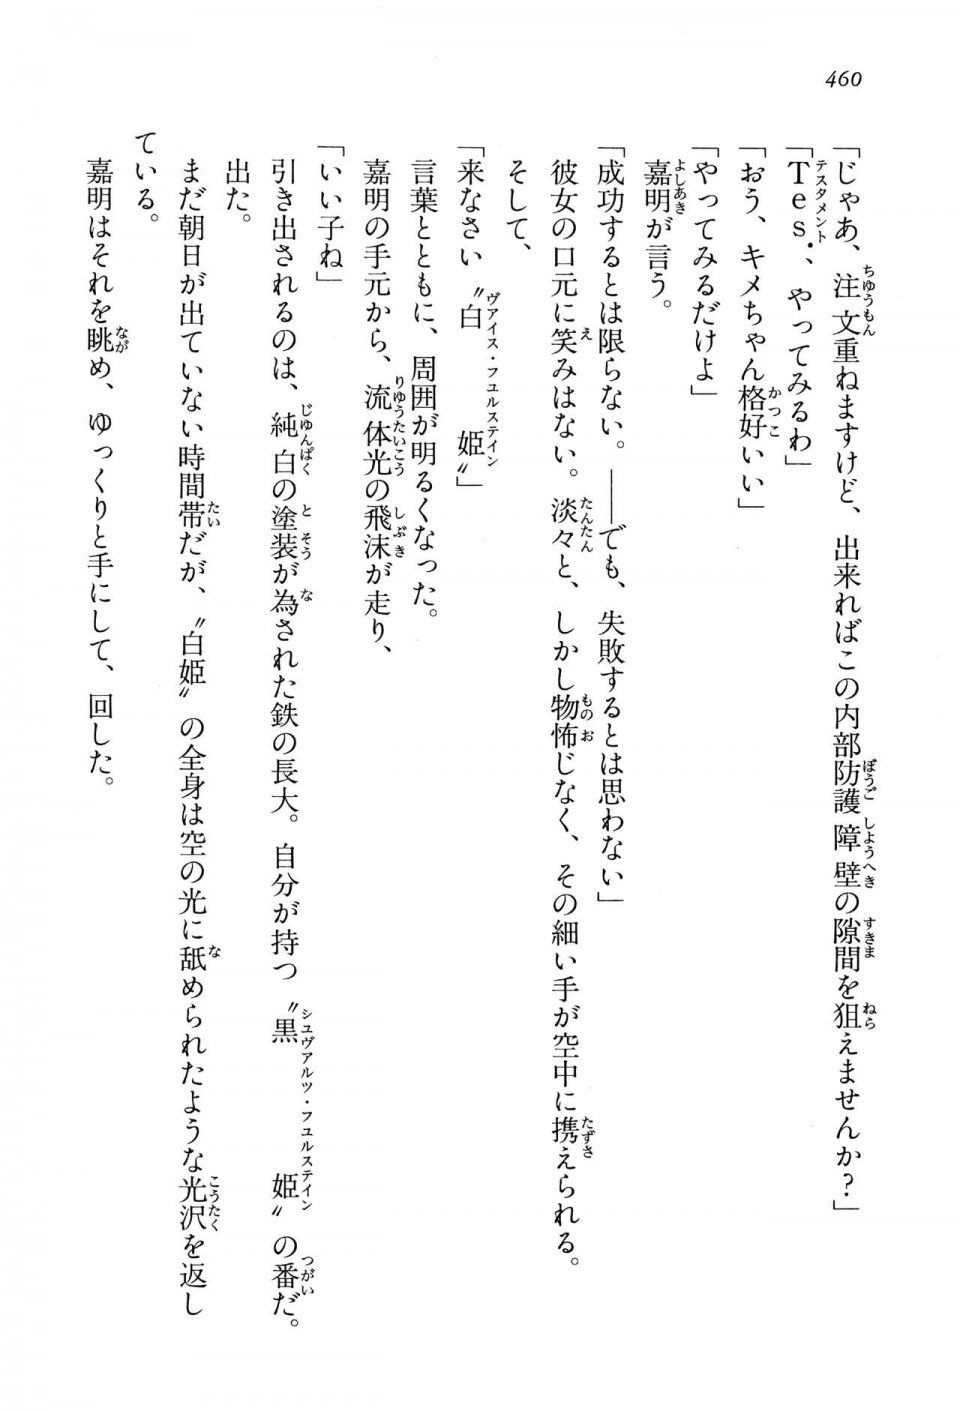 Kyoukai Senjou no Horizon LN Vol 13(6A) - Photo #460